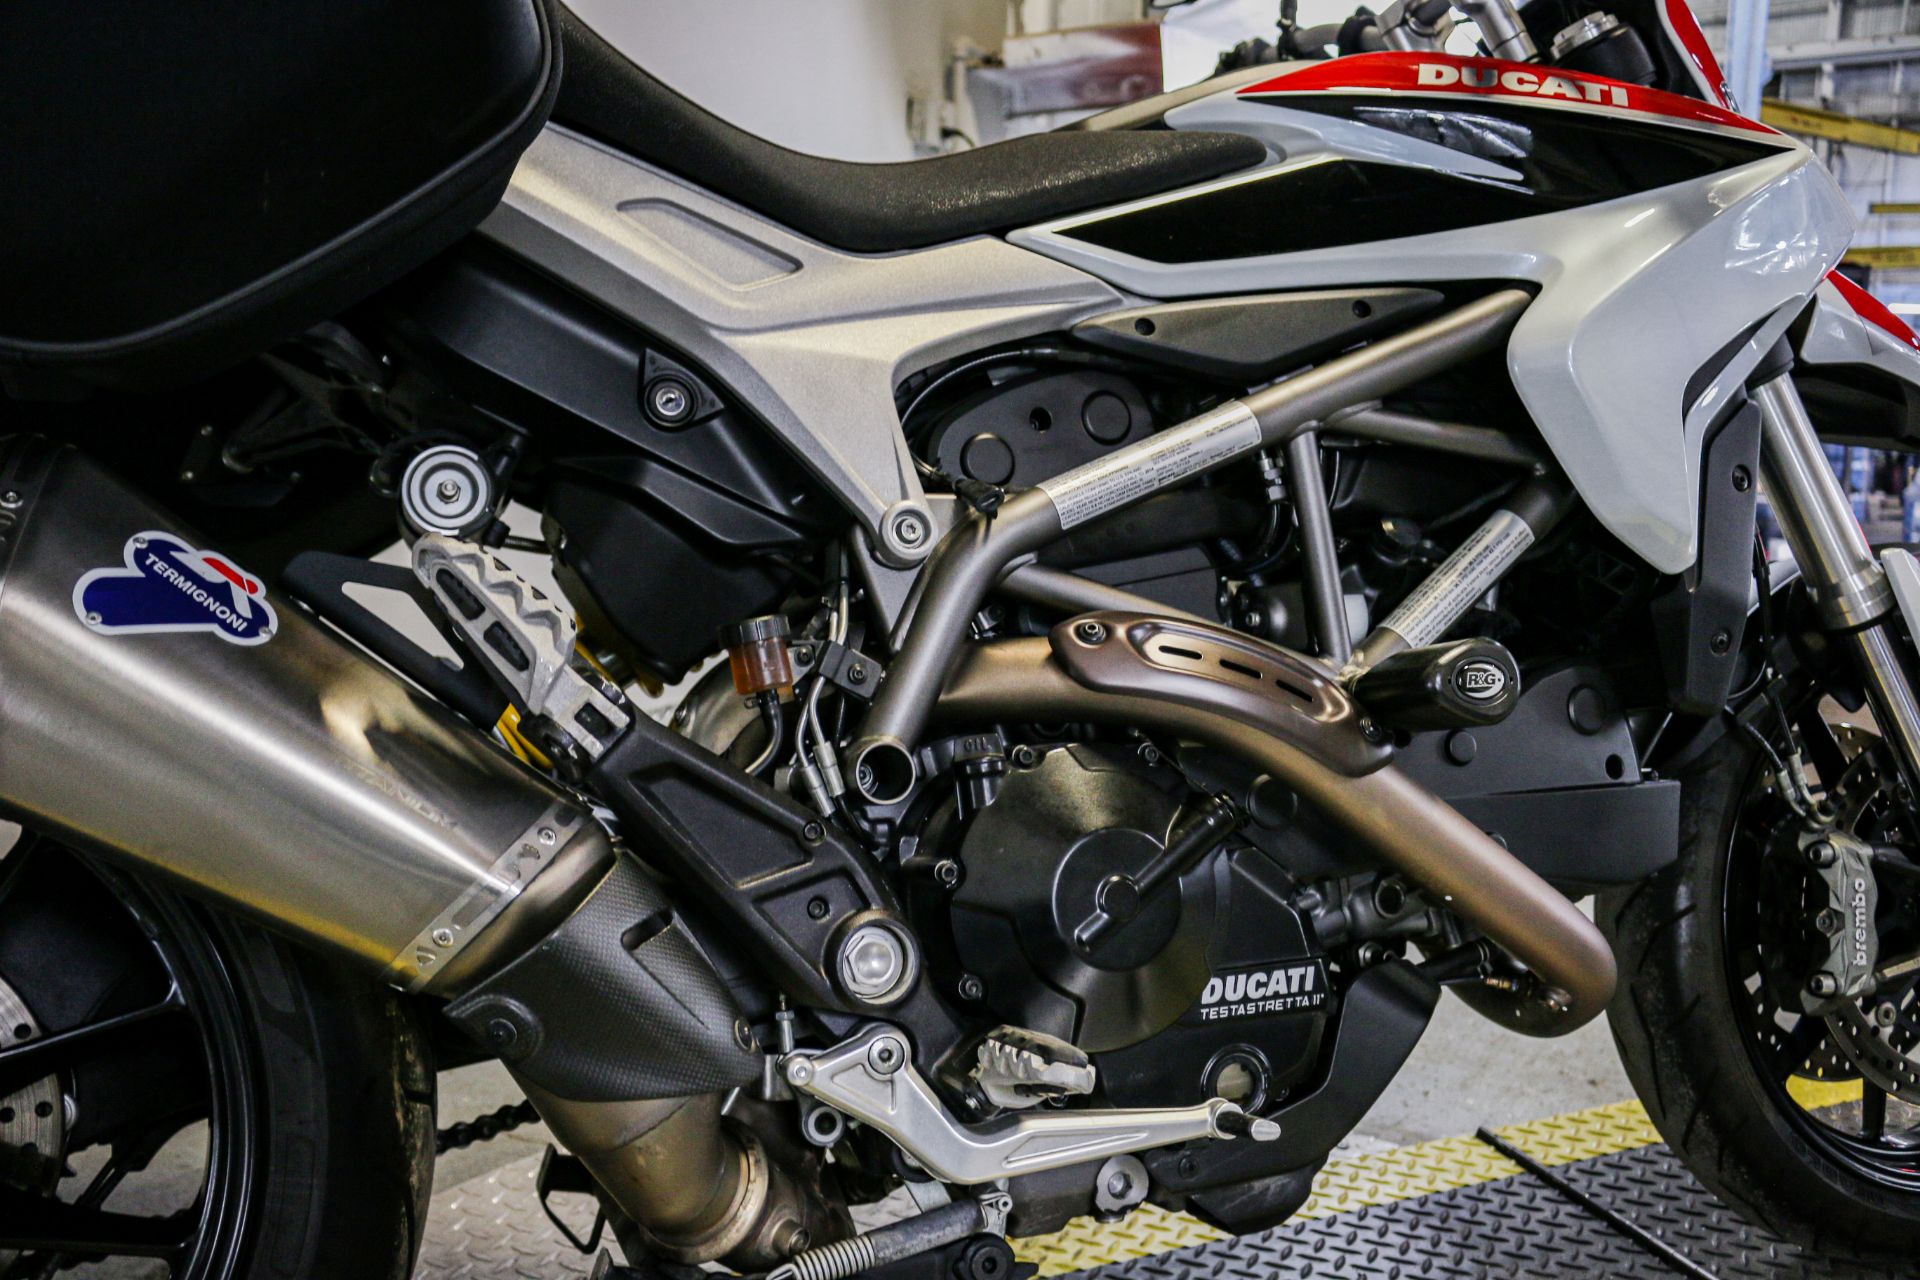 2014 Ducati Hyperstrada in Sacramento, California - Photo 8